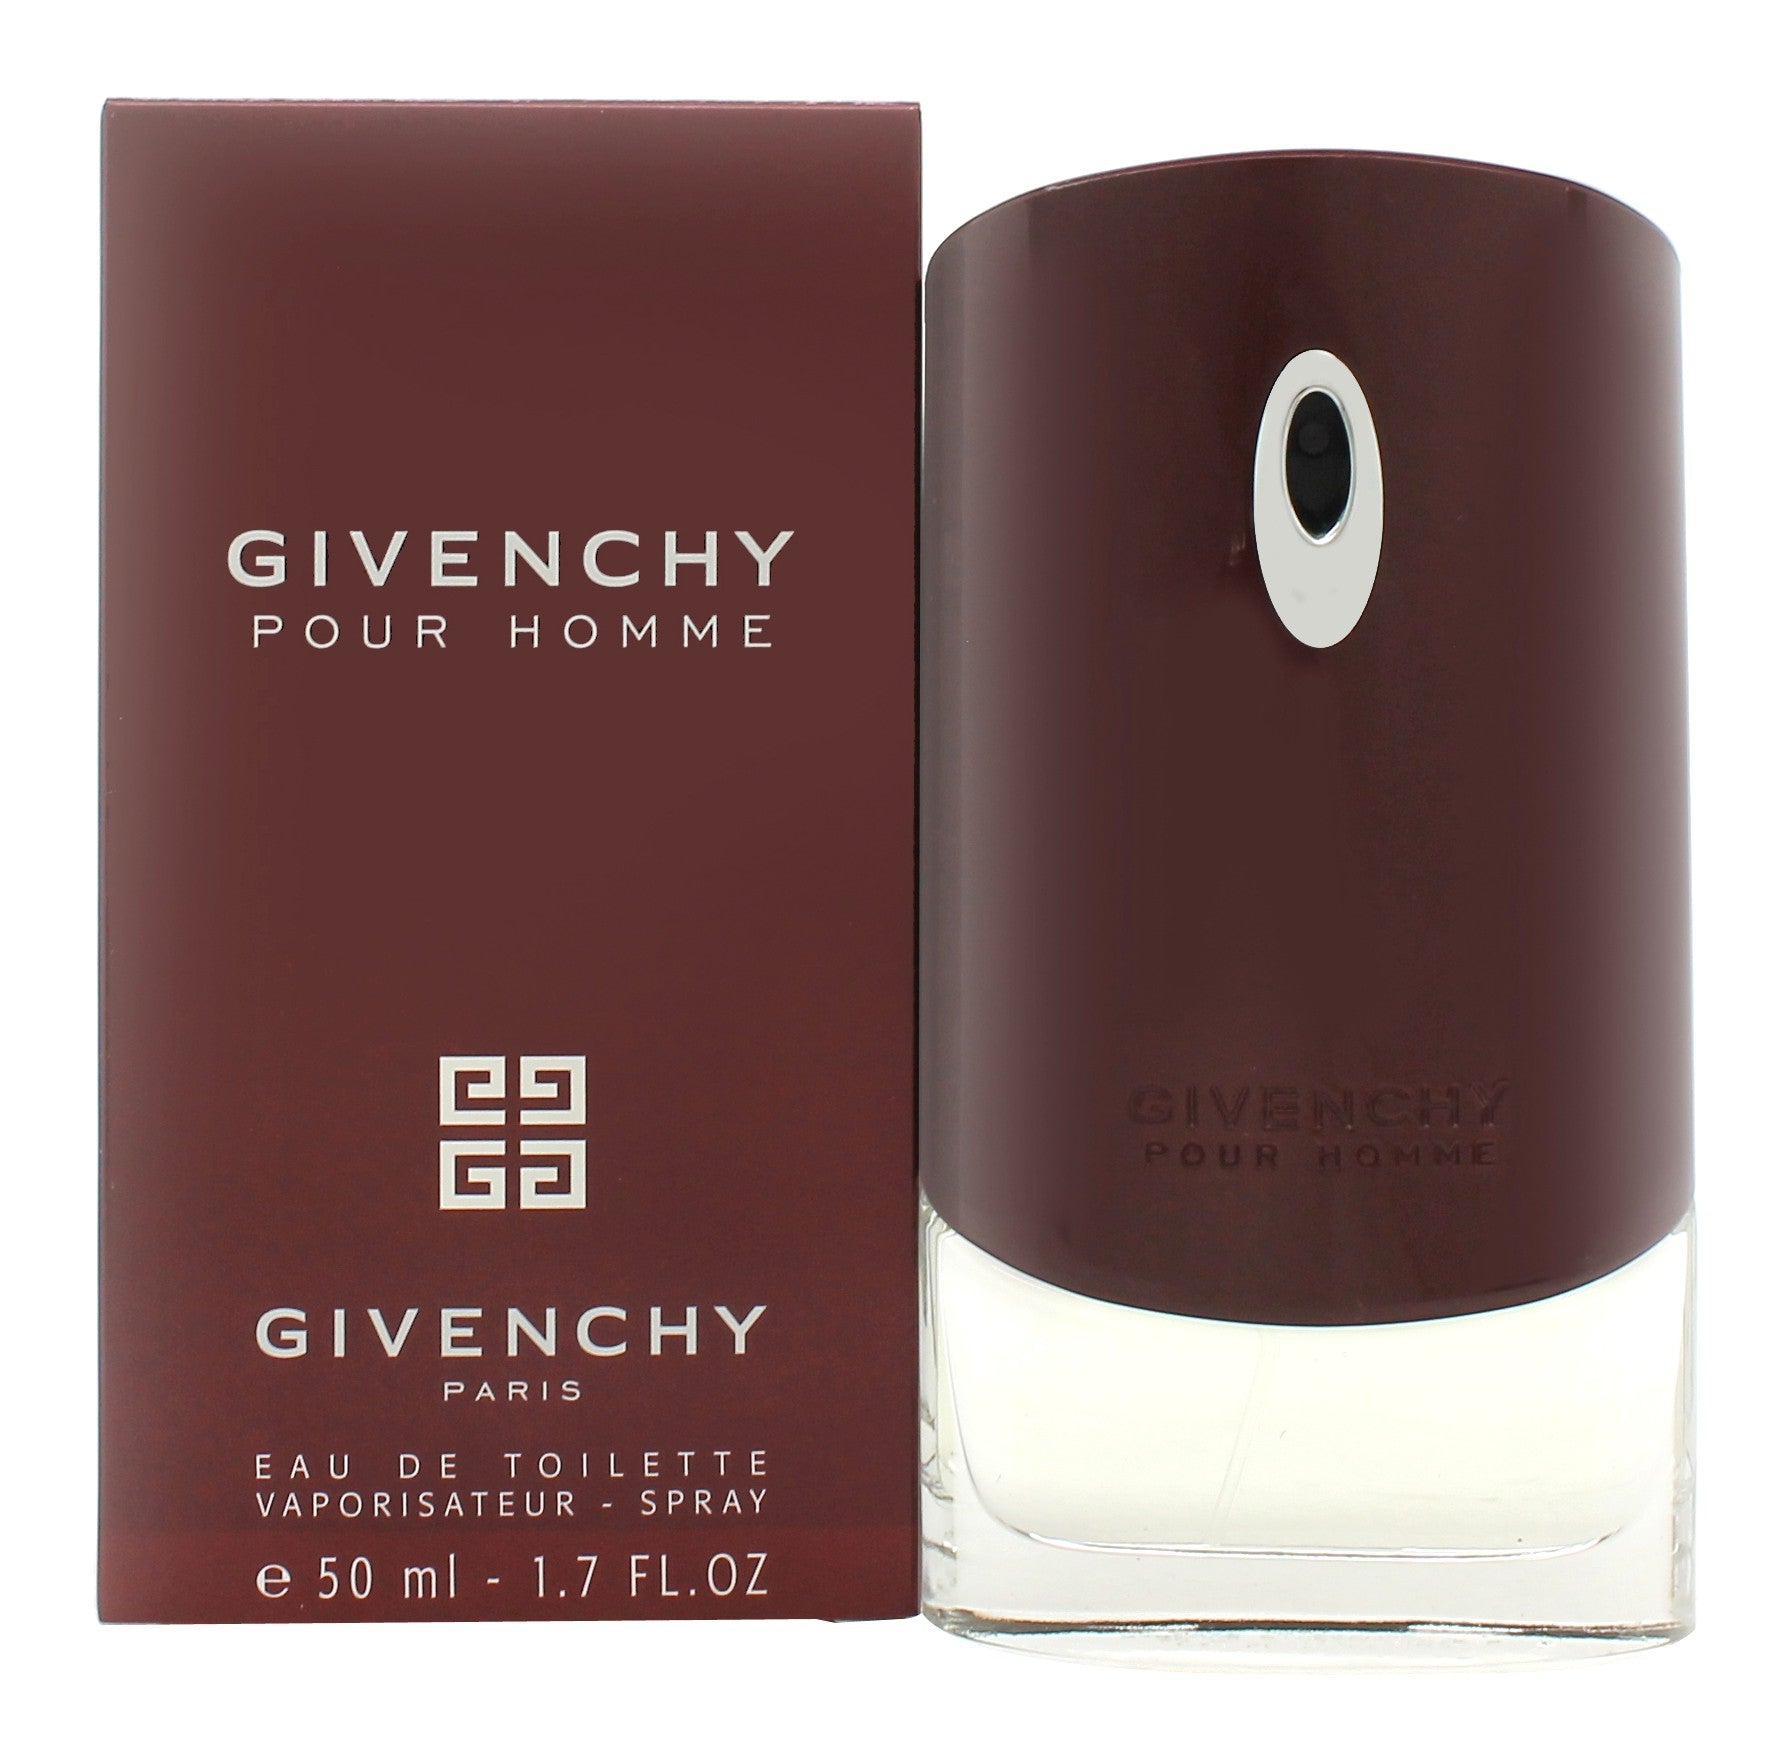 View Givenchy Pour Homme Eau De Toilette 50ml Spray information